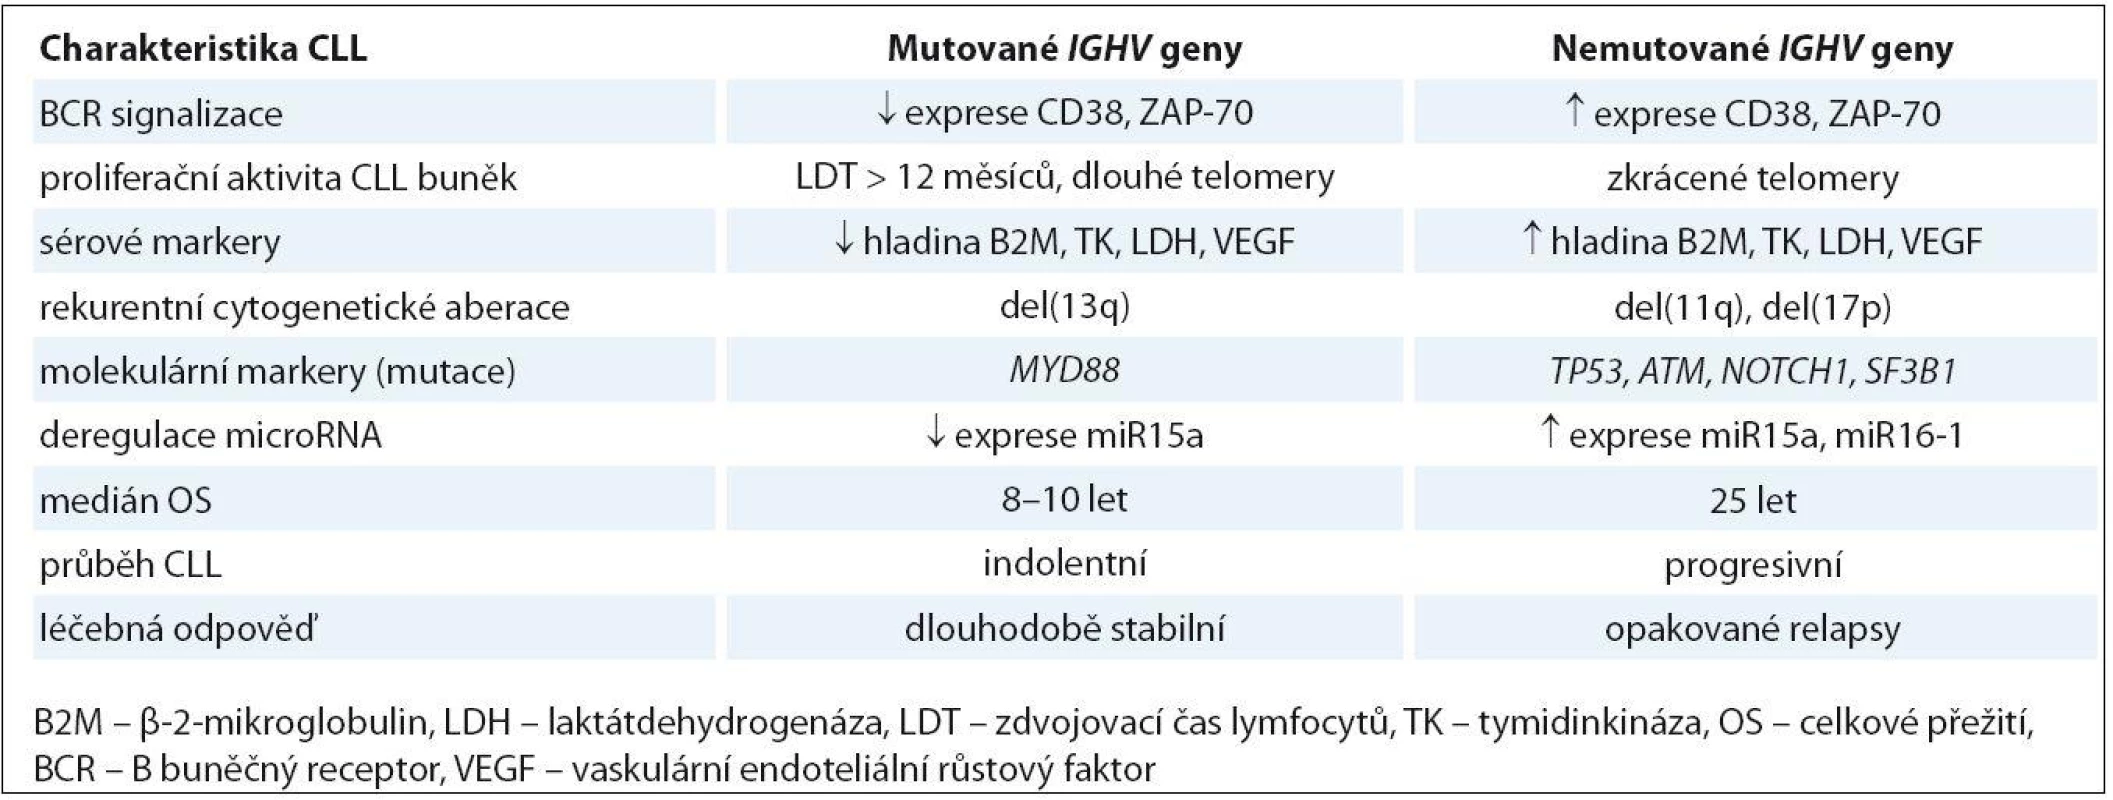 Biologická a klinická charakteristika CLL podle mutačního stavu genů IGVH.